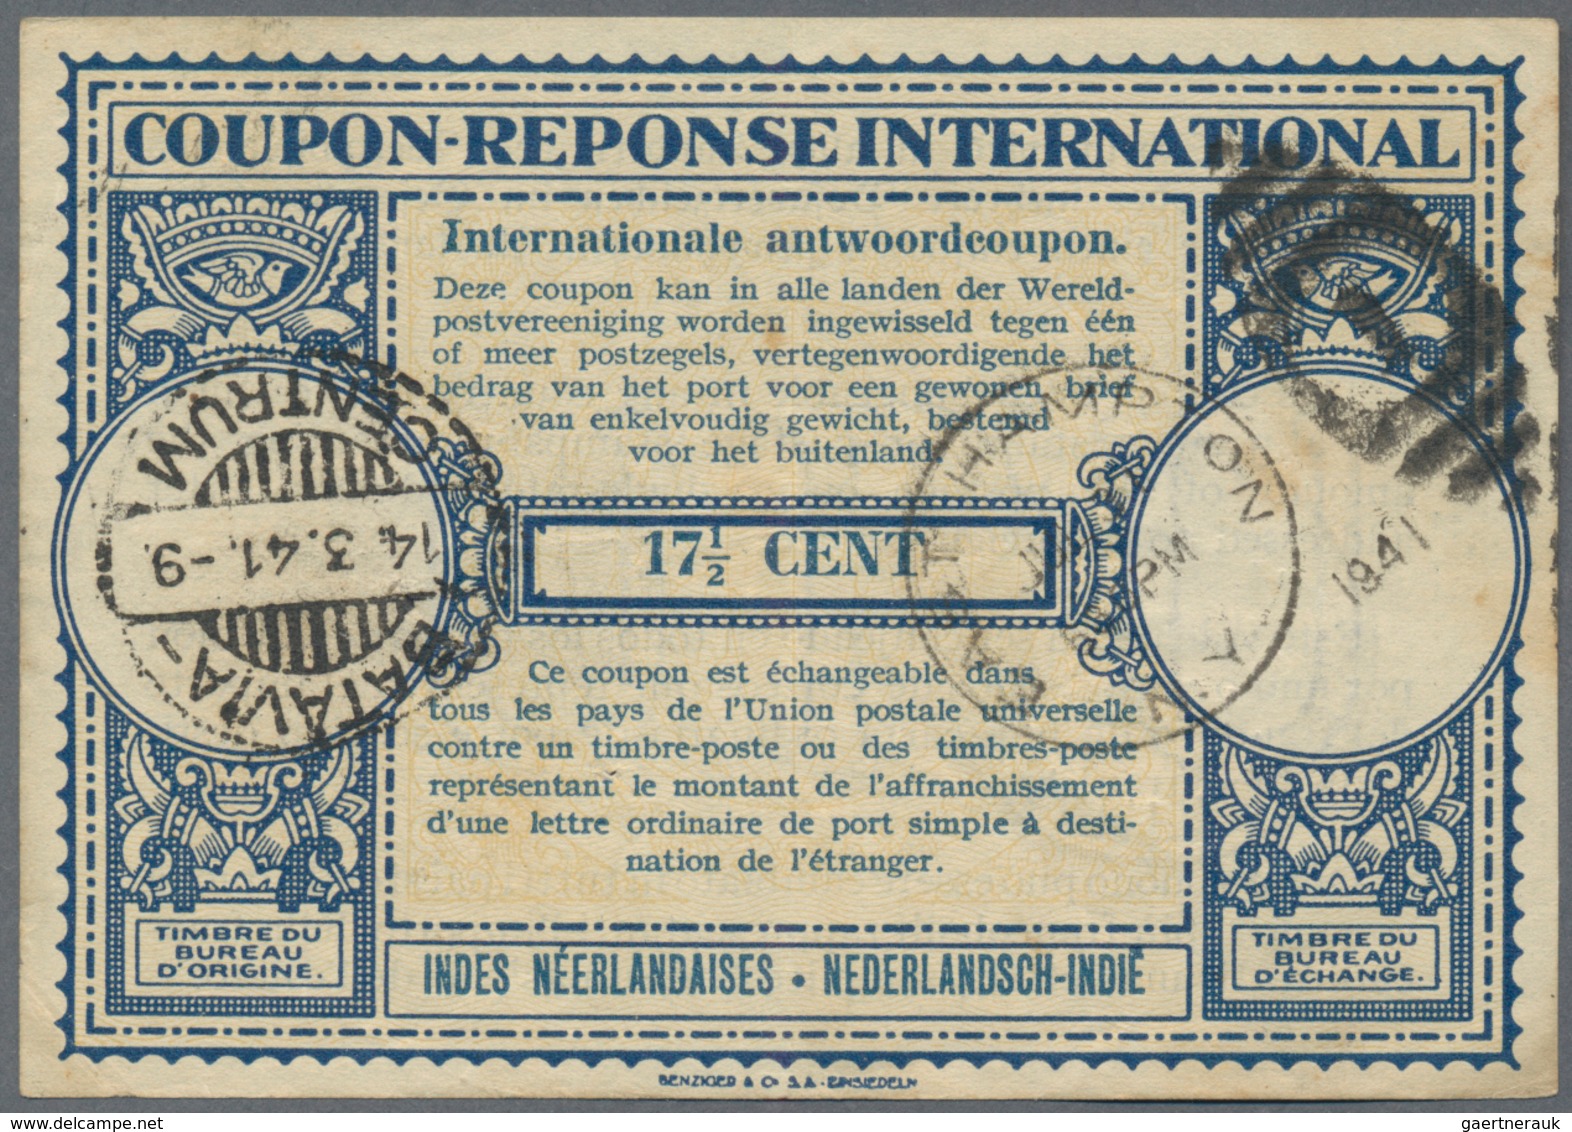 Niederländisch-Indien: 1942/82, lot of International Reply Coupons, inc. 20 C./30 C. (3), 20 C., 17